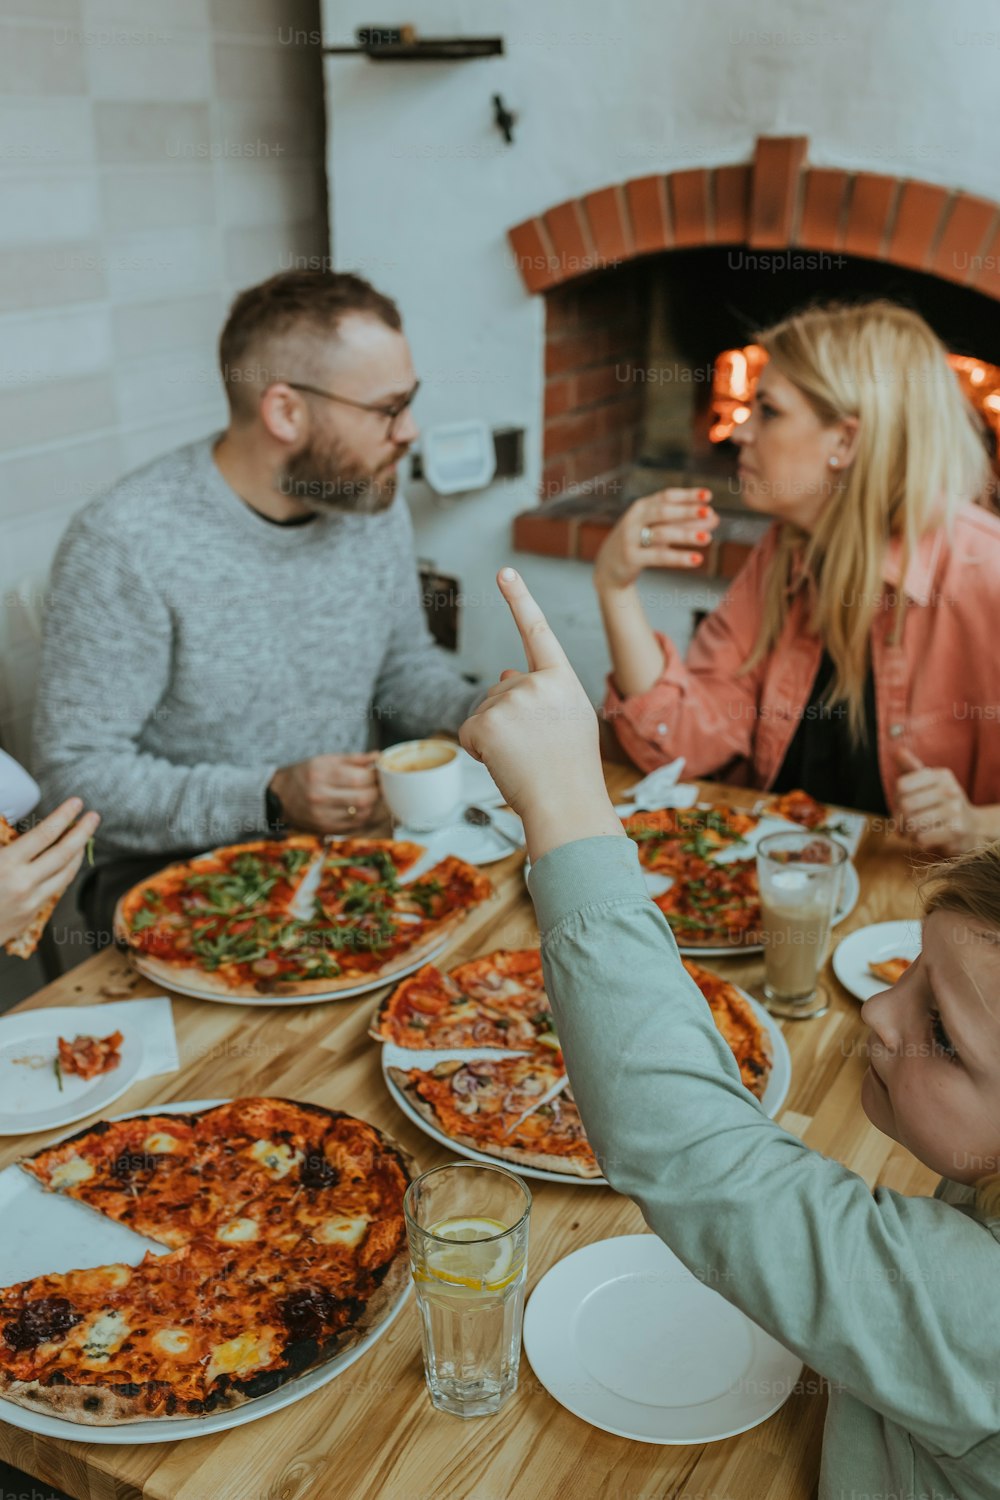 un groupe de personnes assises autour d’une table en train de manger une pizza